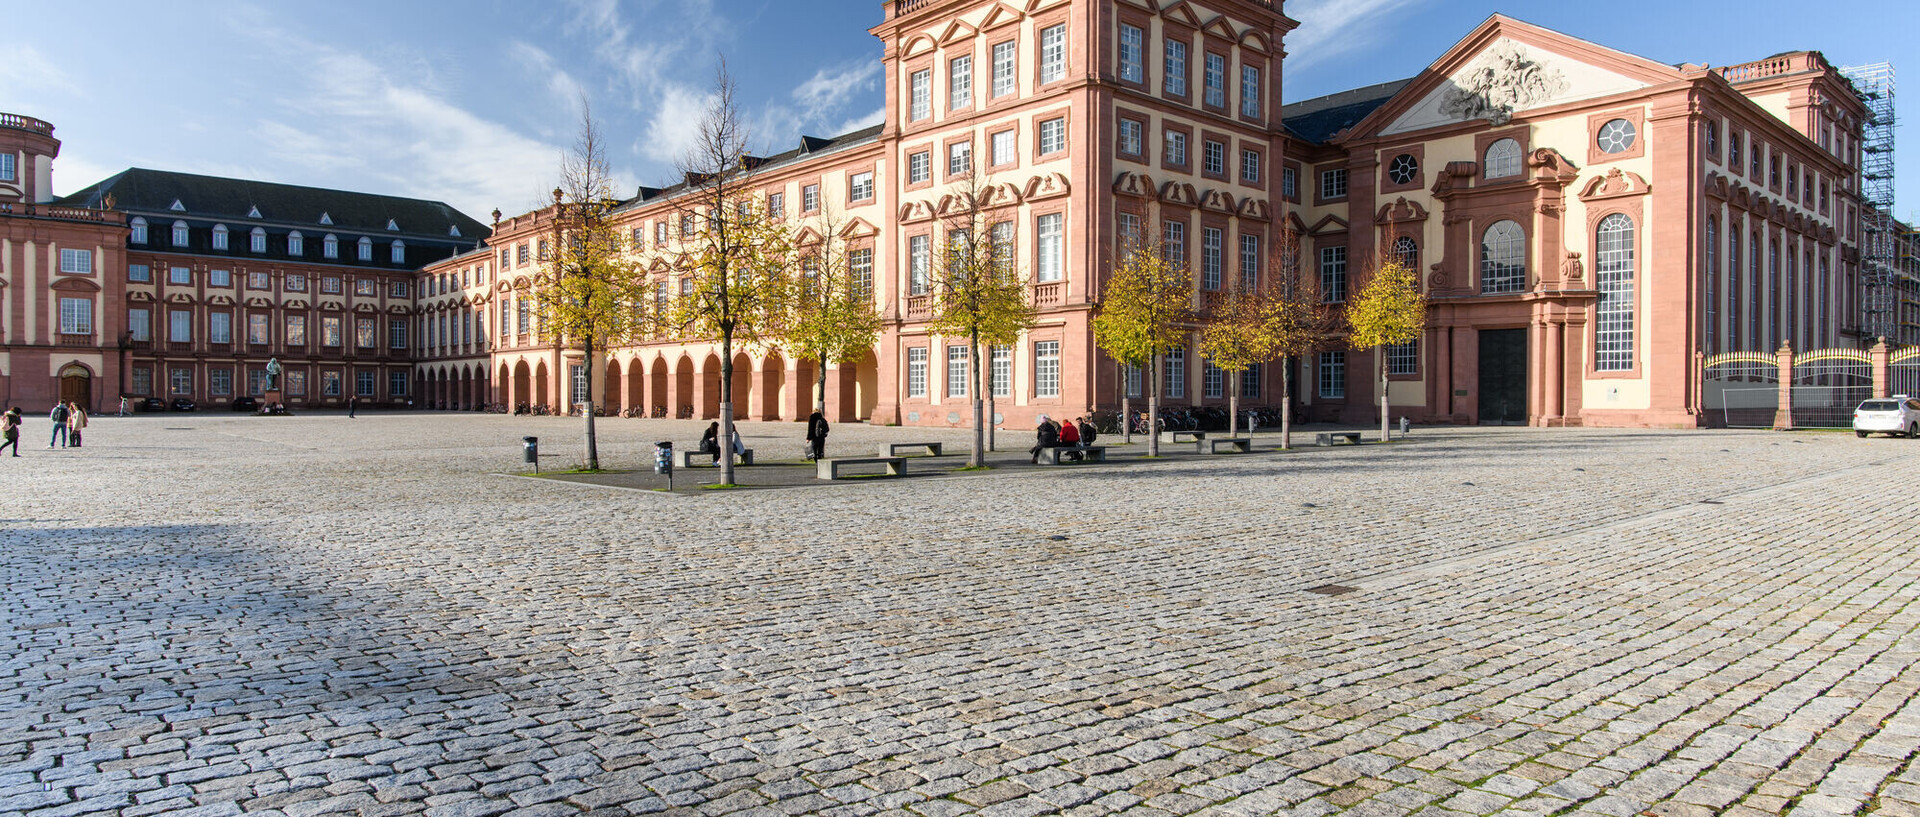 Das Bild zeigt den Ehrenhof der Universität Mannheim und einen Teil des Schlosses